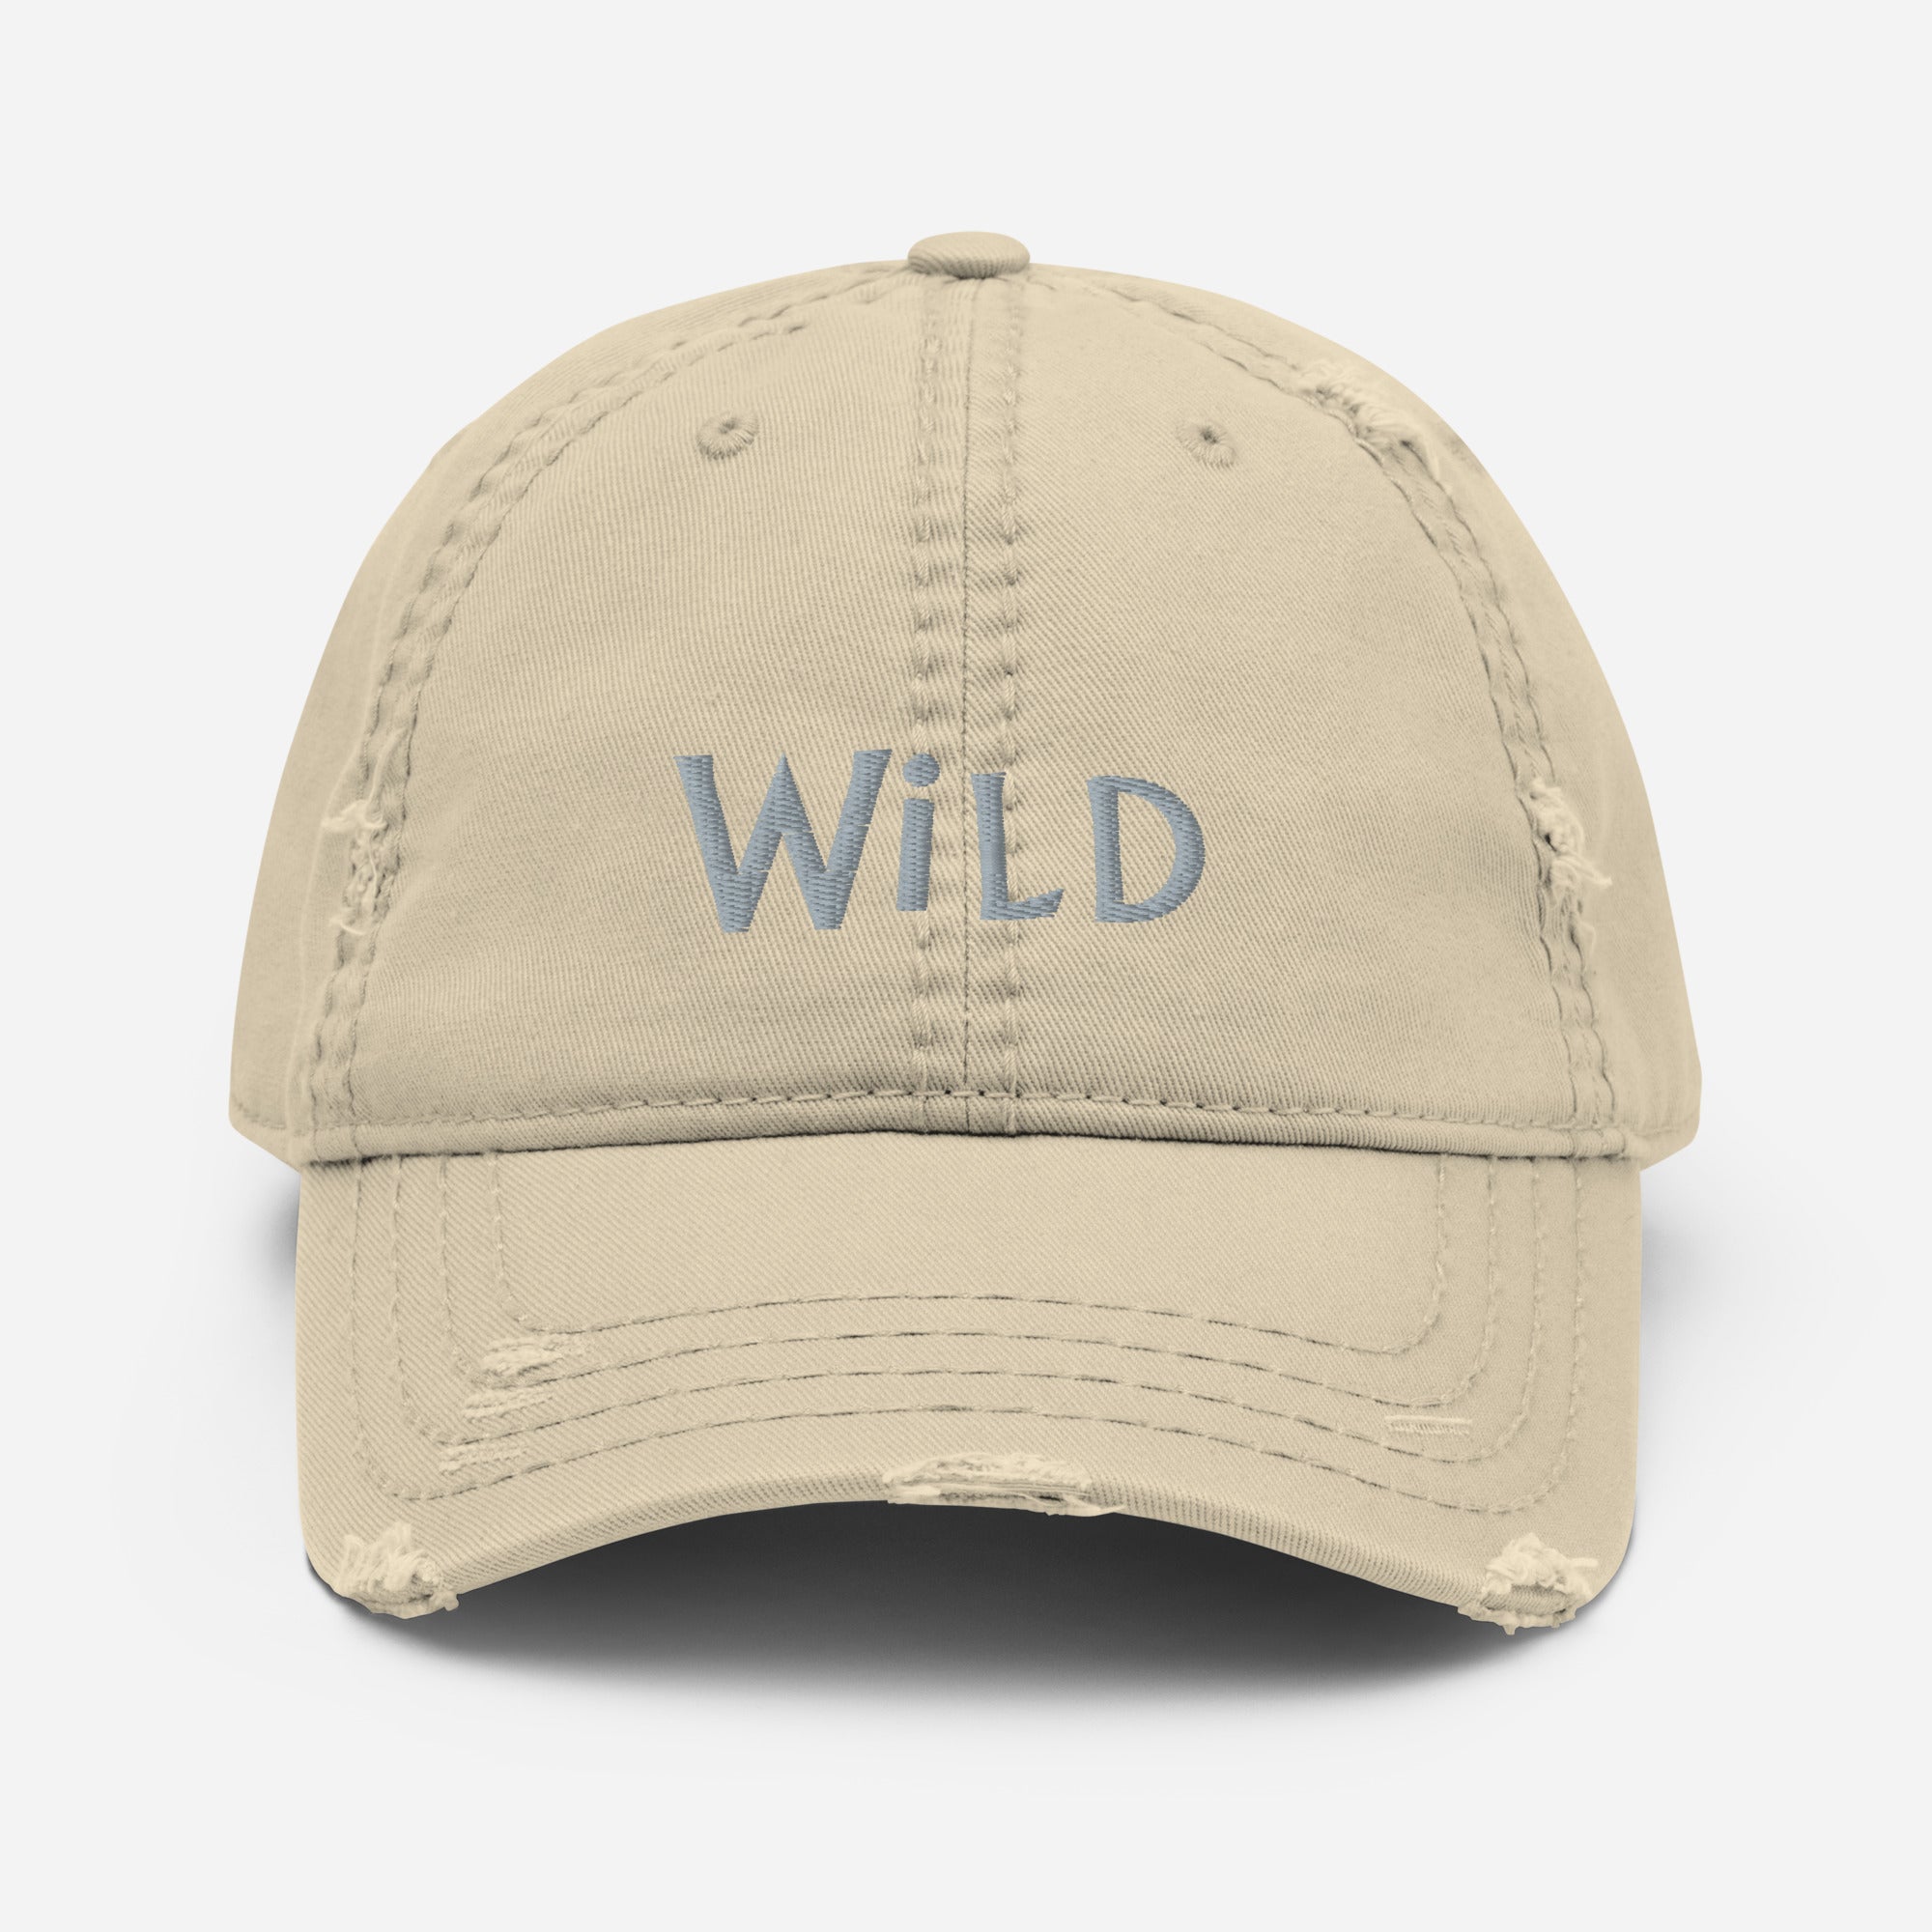 Wild-Distressed Dad Hat